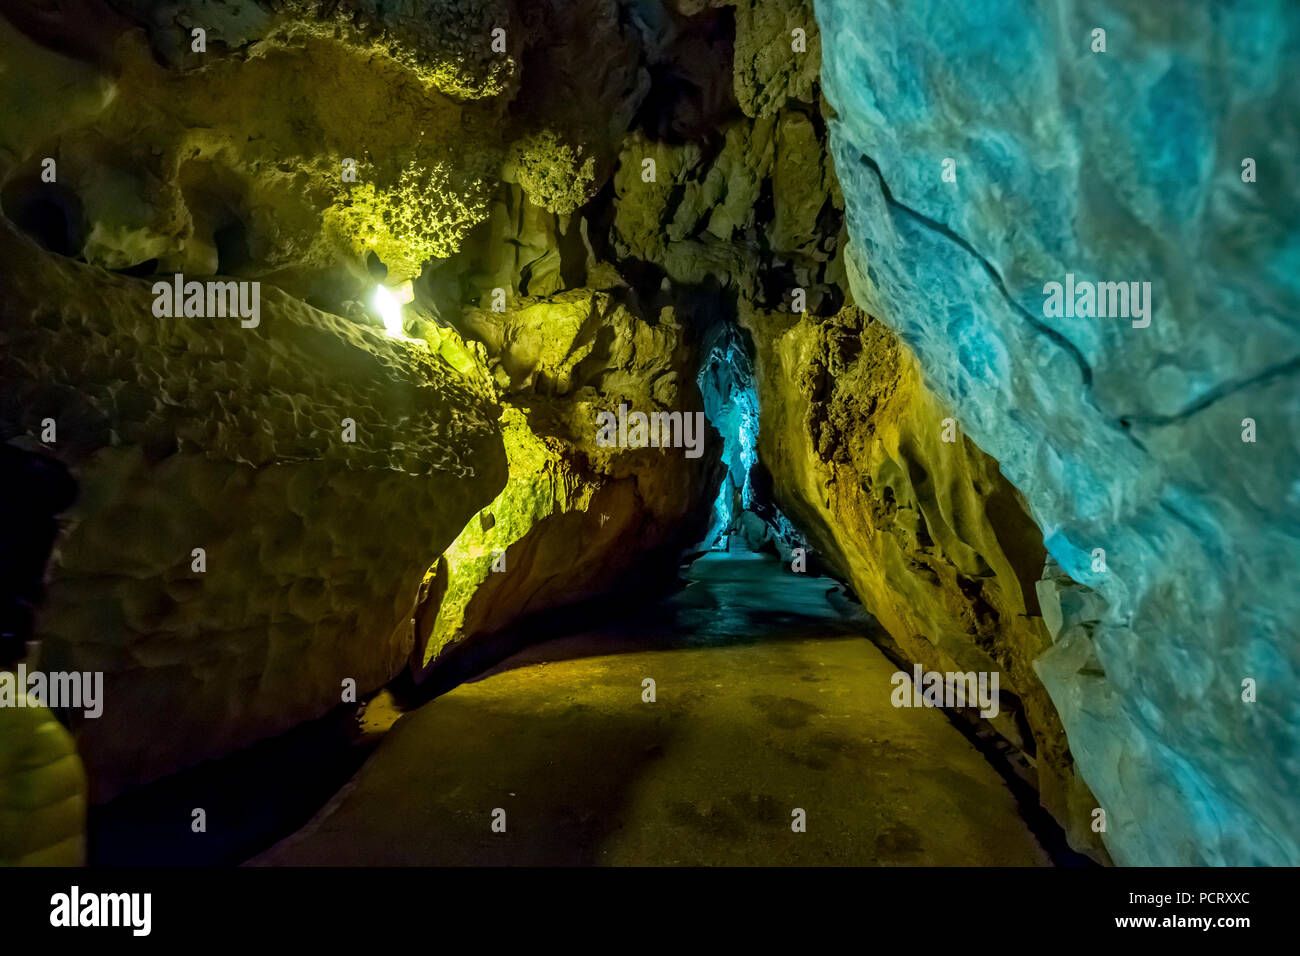 Grottes de l'Indiens, Cueva del Indio, cavernes avec un cours d'eau accessible aux touristes, Viñales, Cuba, l'Amérique centrale, Cuba, Caraïbes Banque D'Images